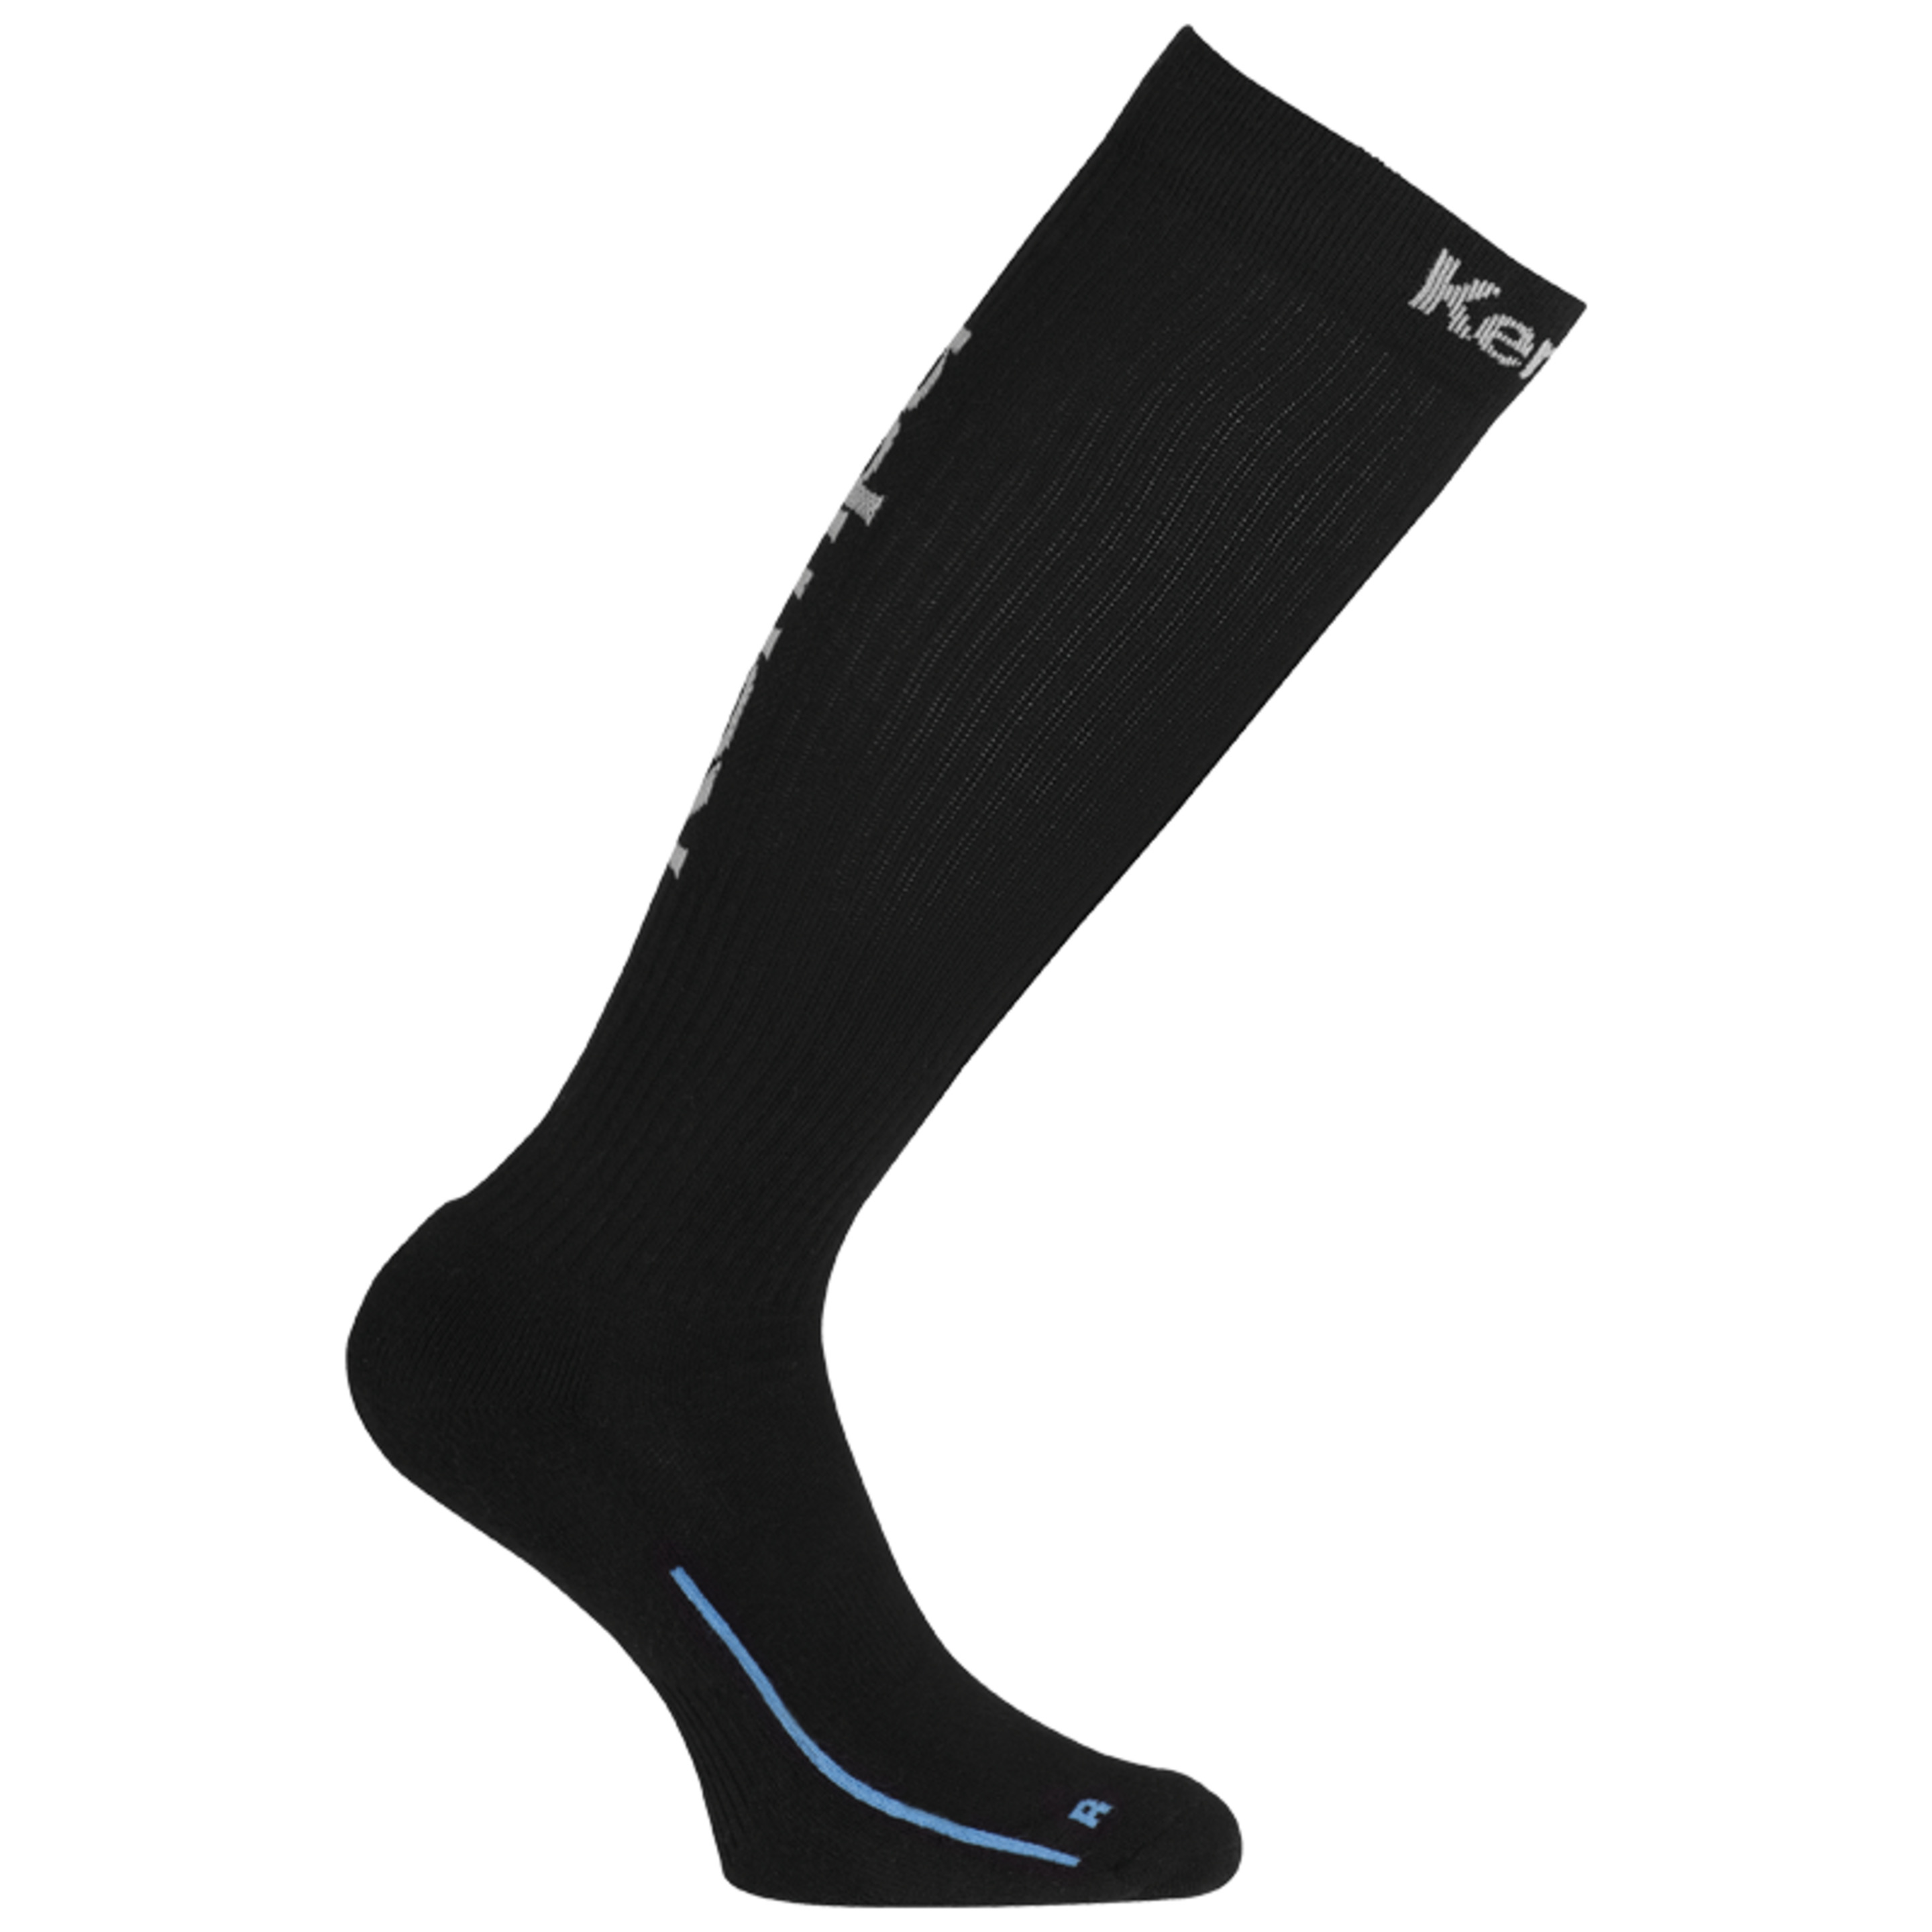 Calcetines Long Socks Kempa - negro_blanco - Long Socks Negro/blanco Kempa  MKP